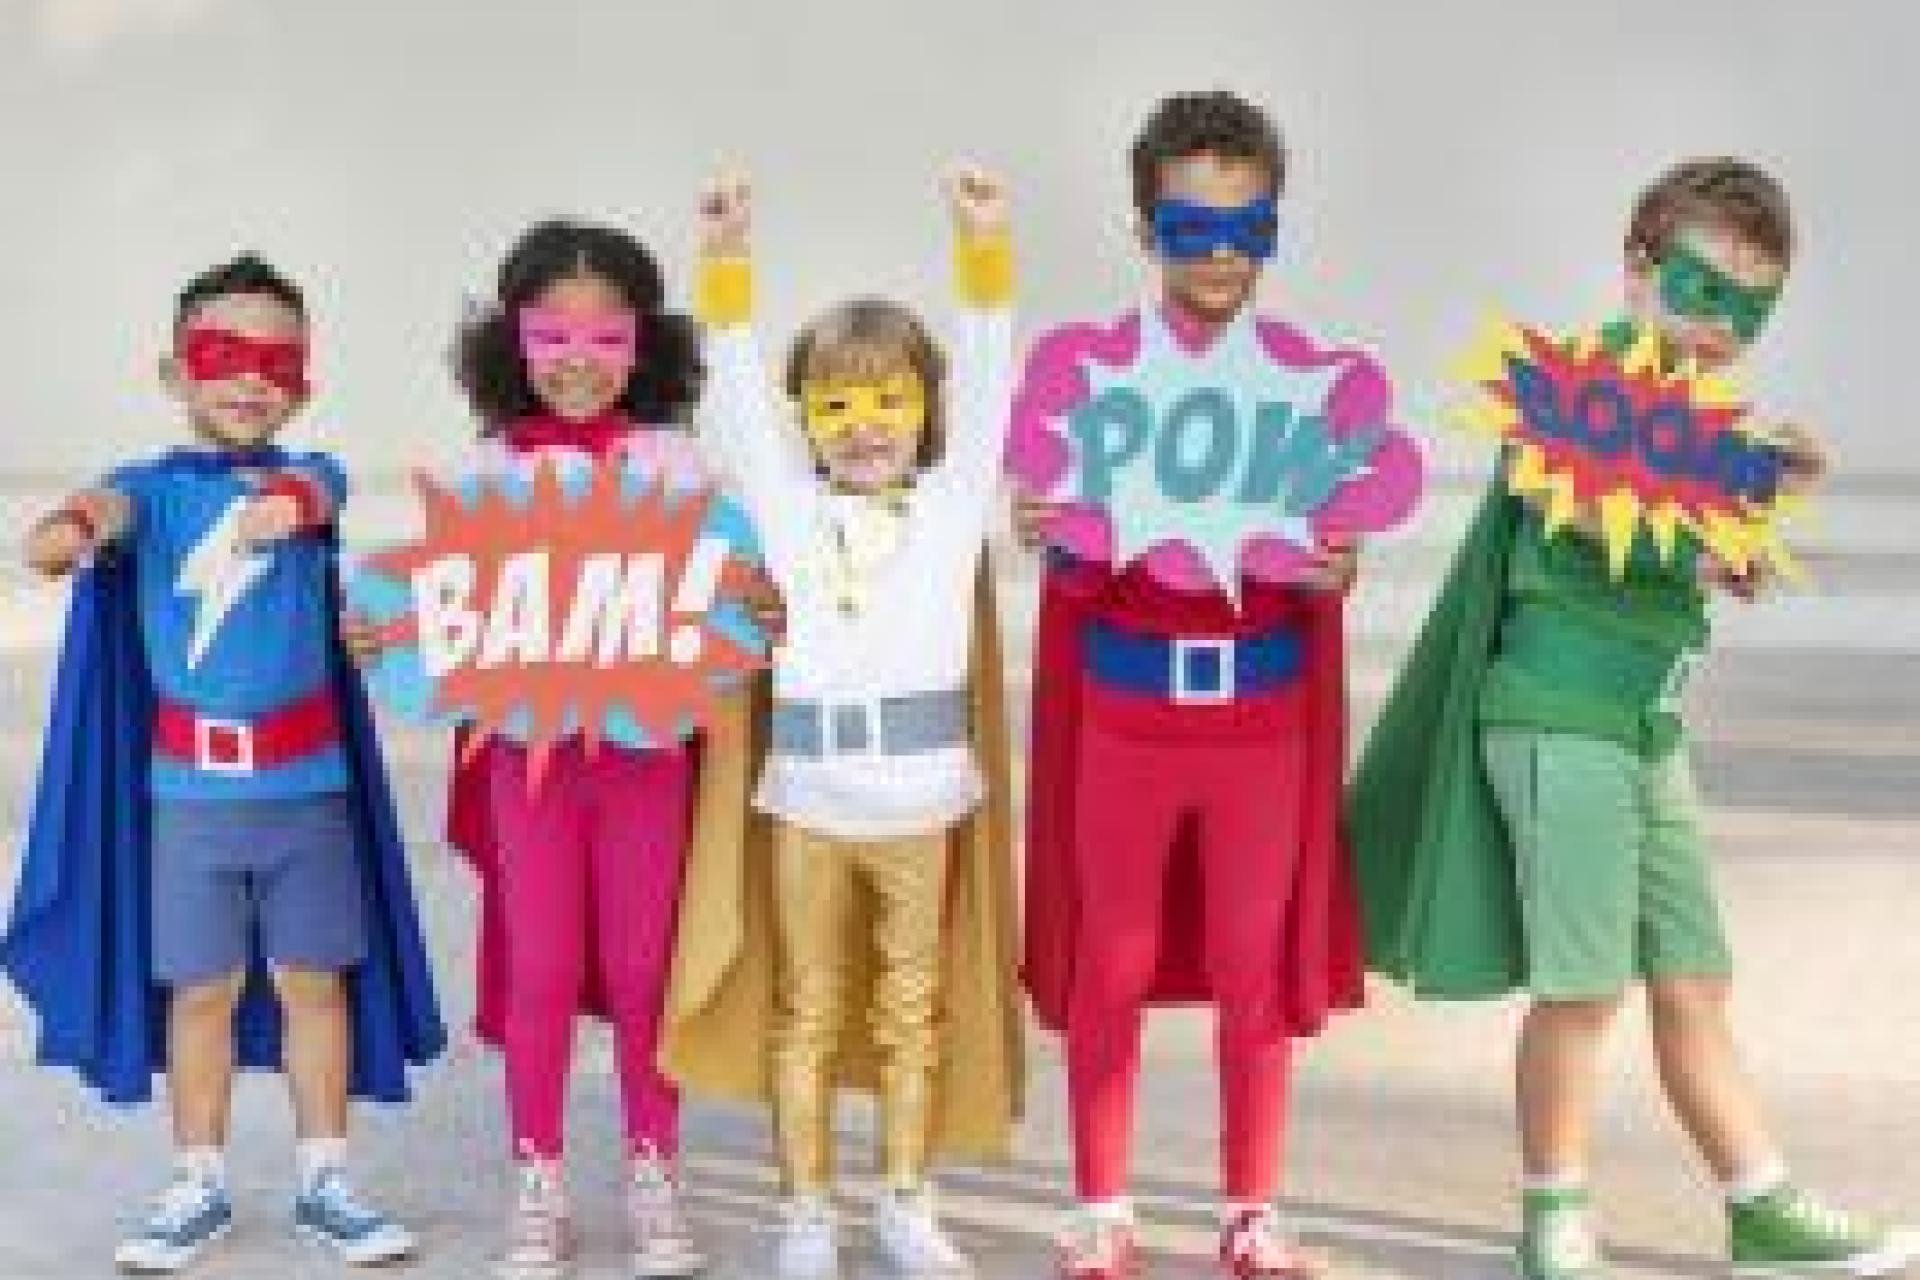 Kinderen verkleed als superhelden